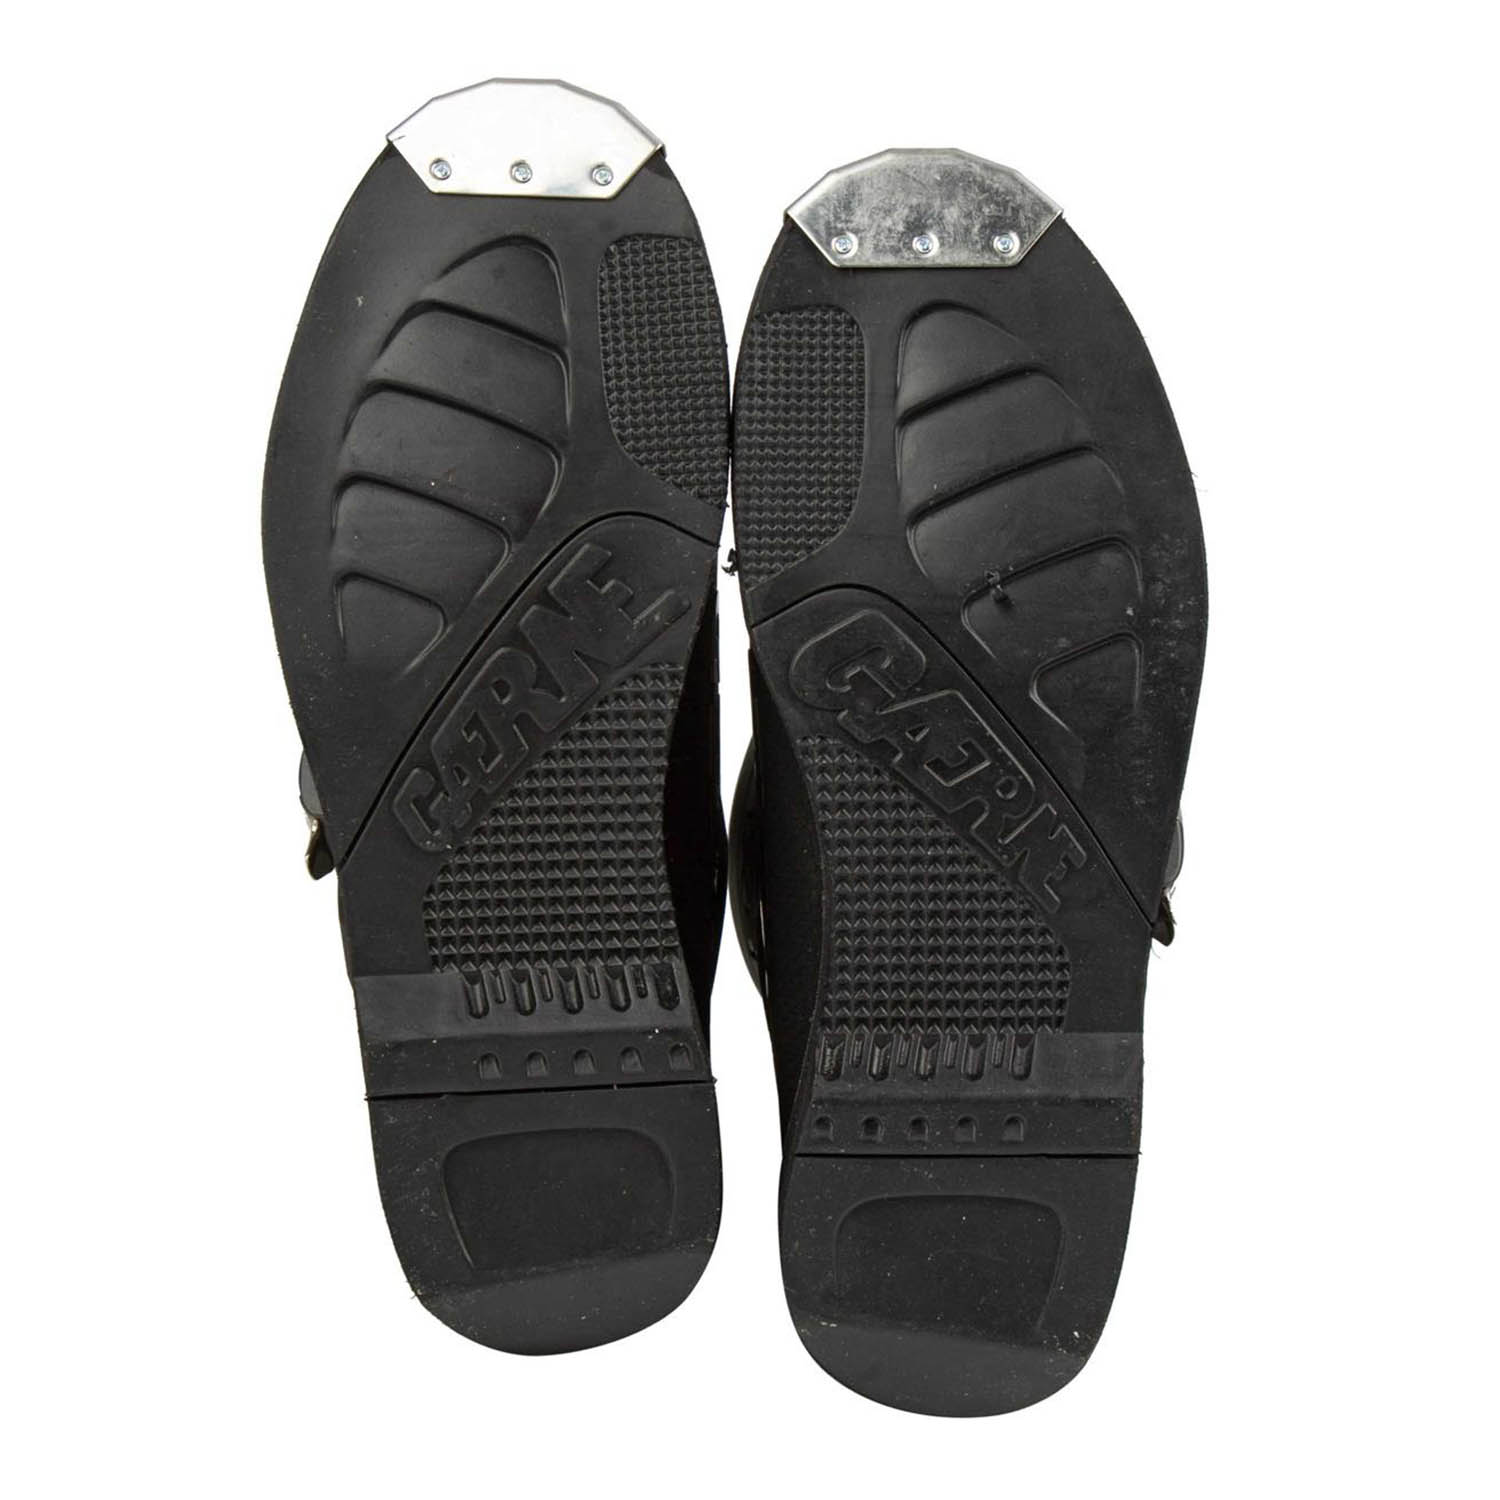 GAERNE GX-1 черного цвета спортивные сапоги для мотокросса, вид подошвы купить по низкой цене